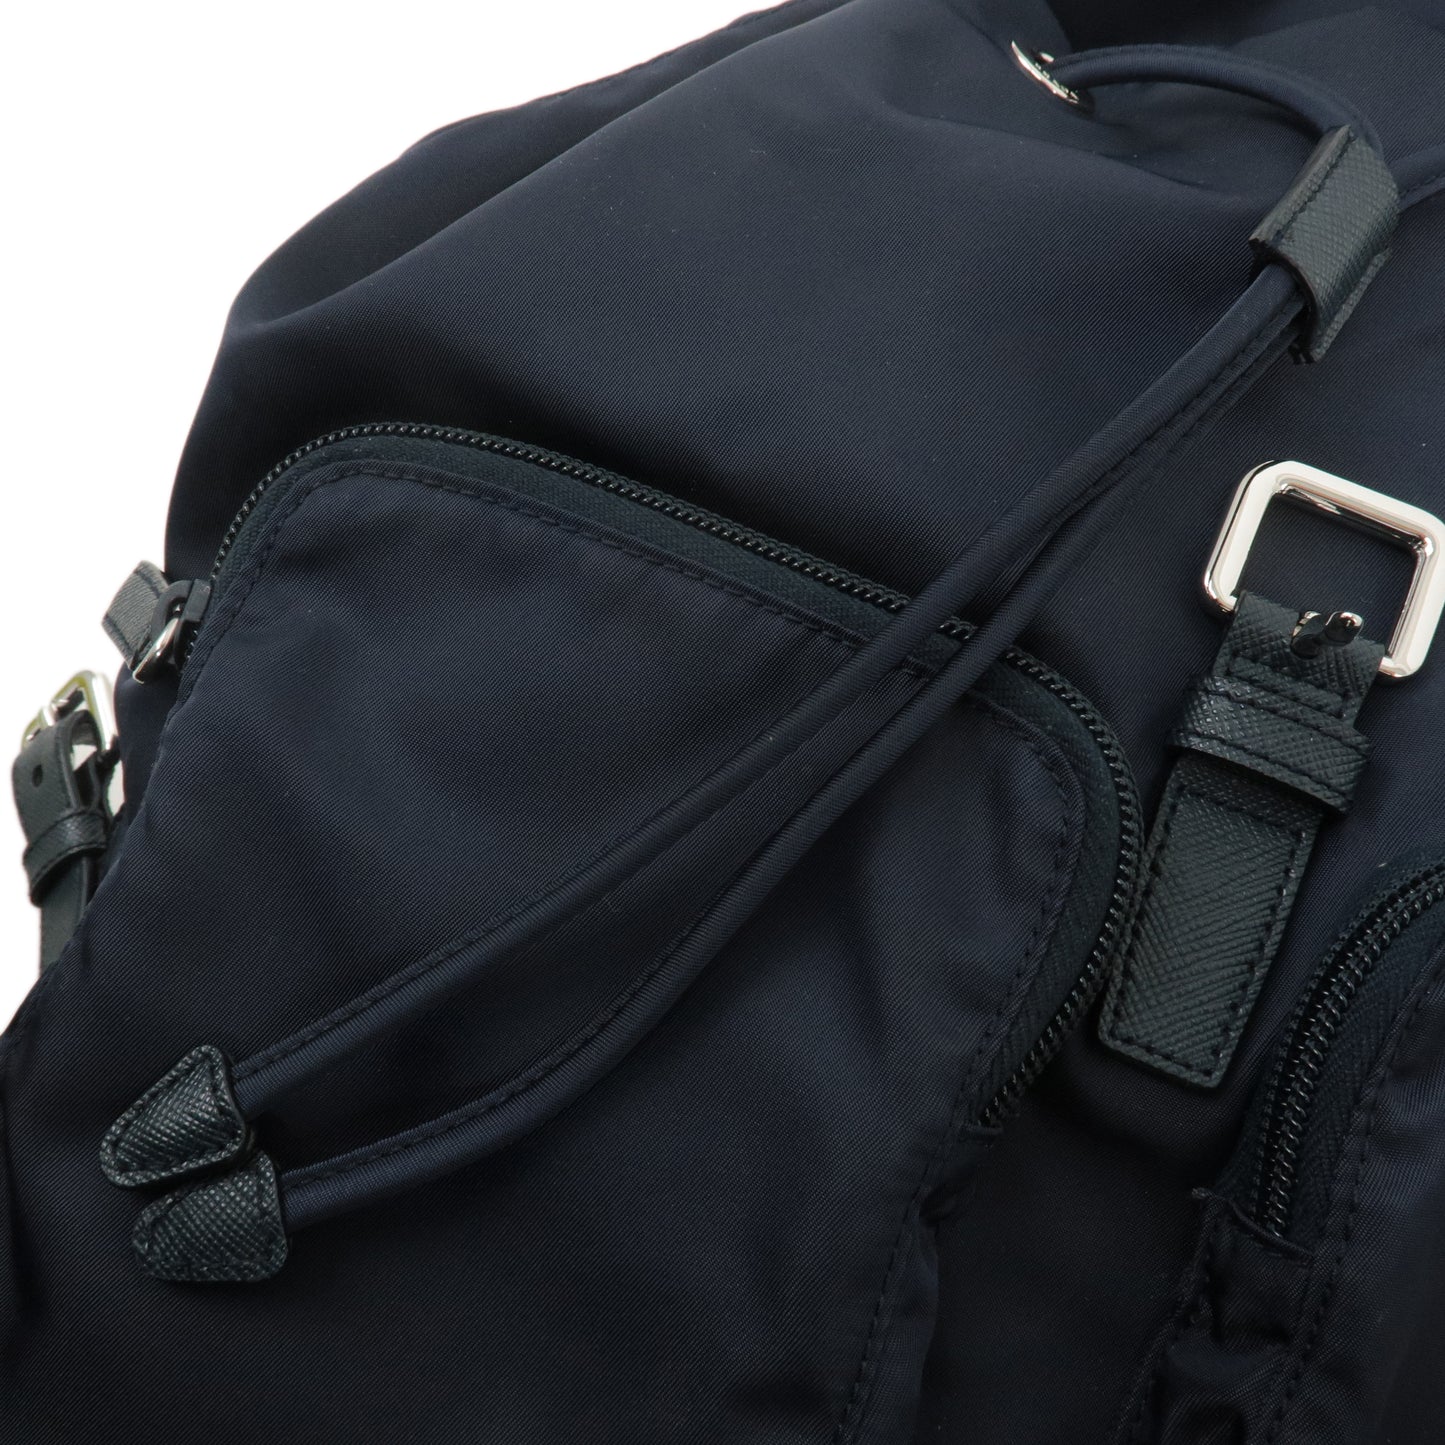 PRADA Nylon Leather Back Pack Ruck Sack Navy 1BZ005